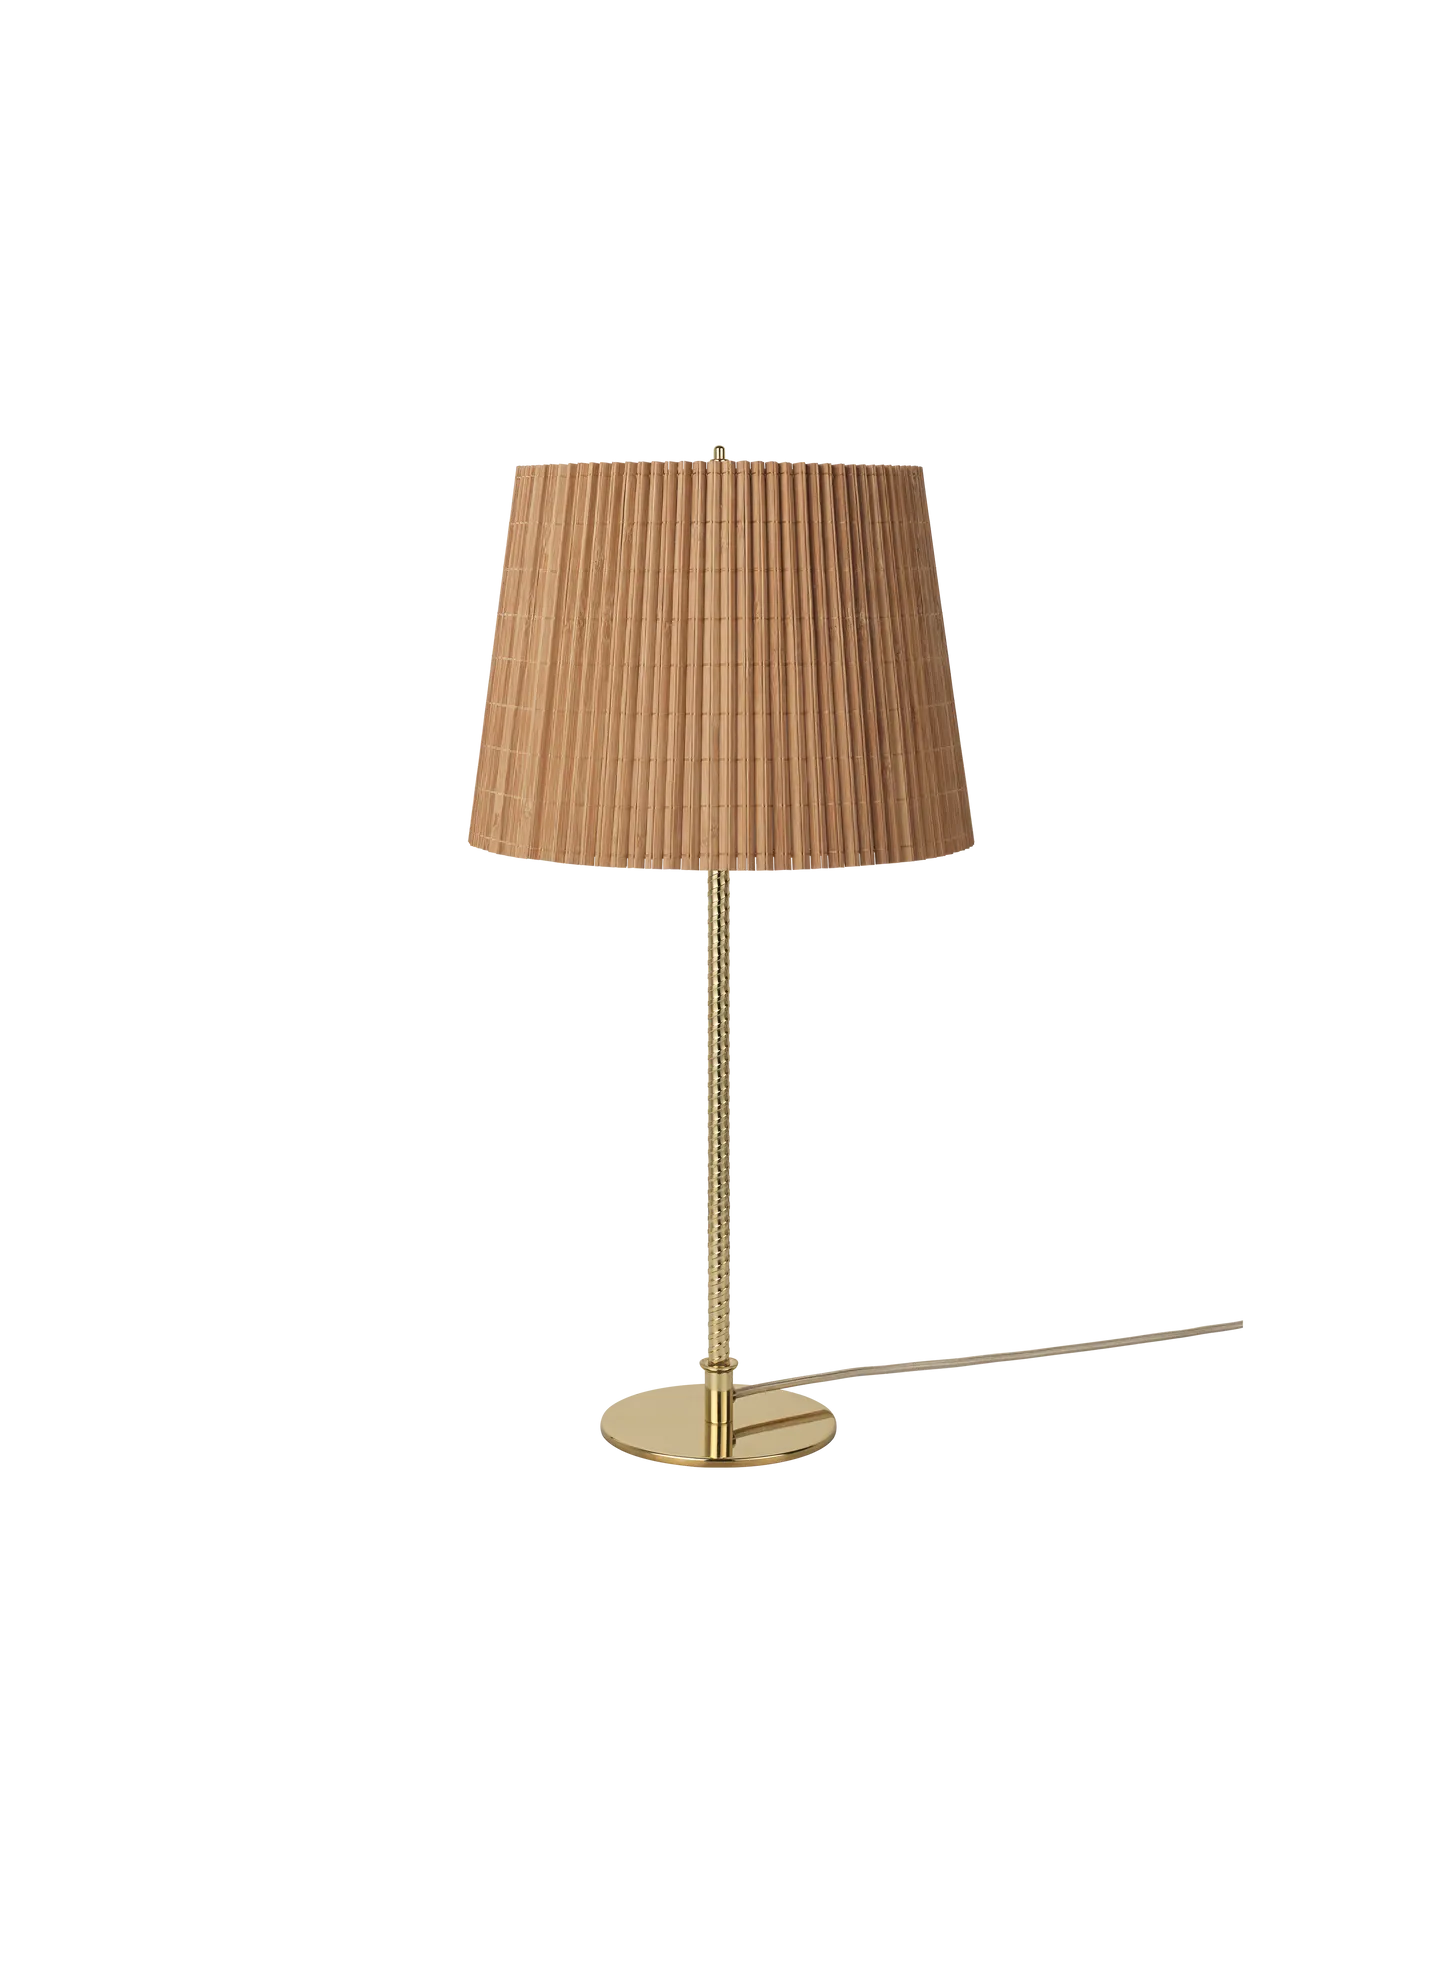 Gubi 9205 Tisch Lampe Bamboo